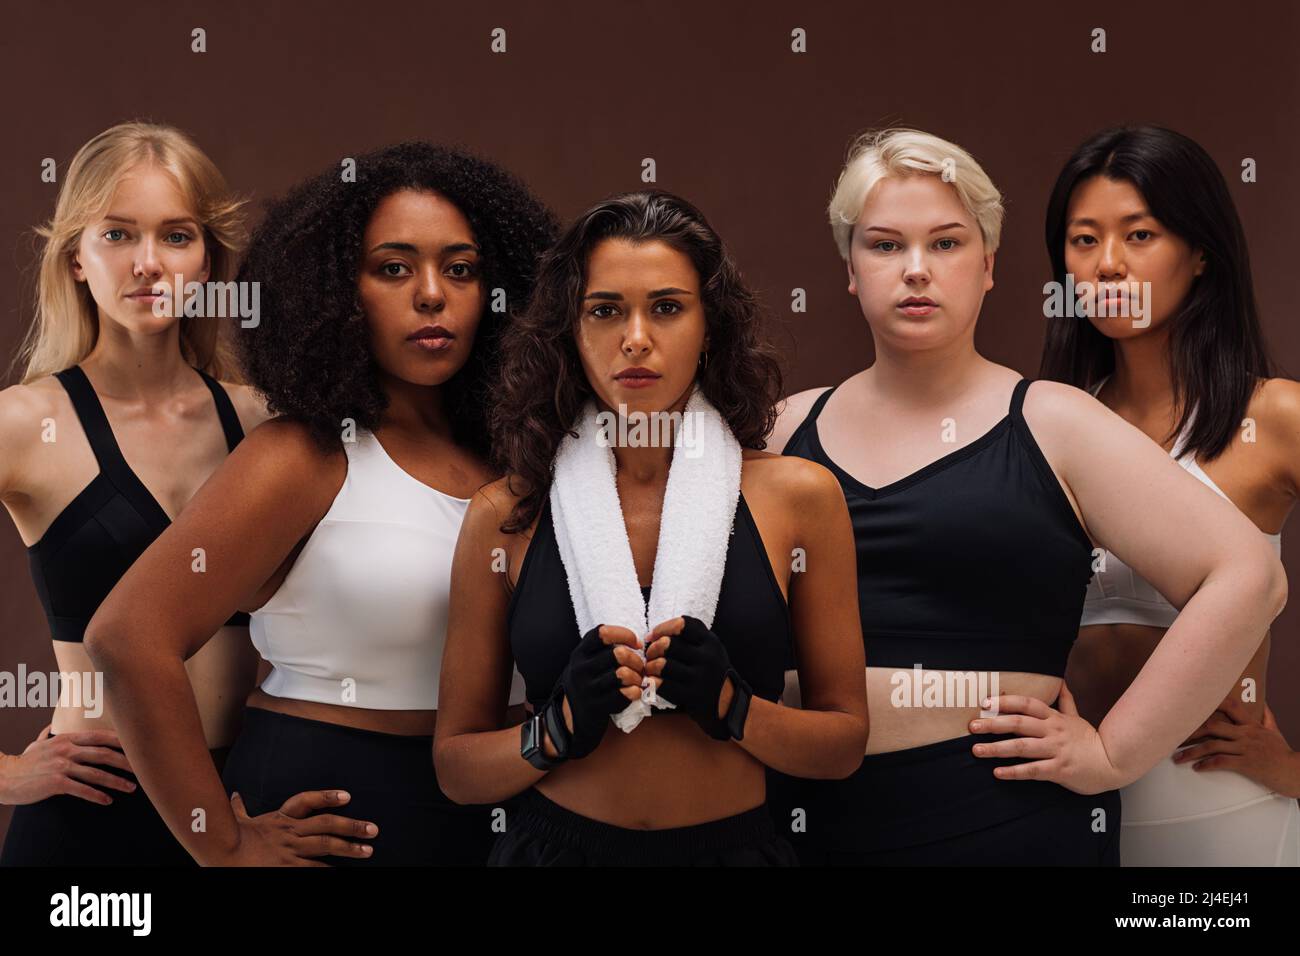 Eine Gruppe von Frauen unterschiedlicher Rasse und Körpergröße in Sportbekleidung, die zusammen stehen. Verschiedene Weibchen betrachten die Kamera vor braunem Hintergrund. Stockfoto